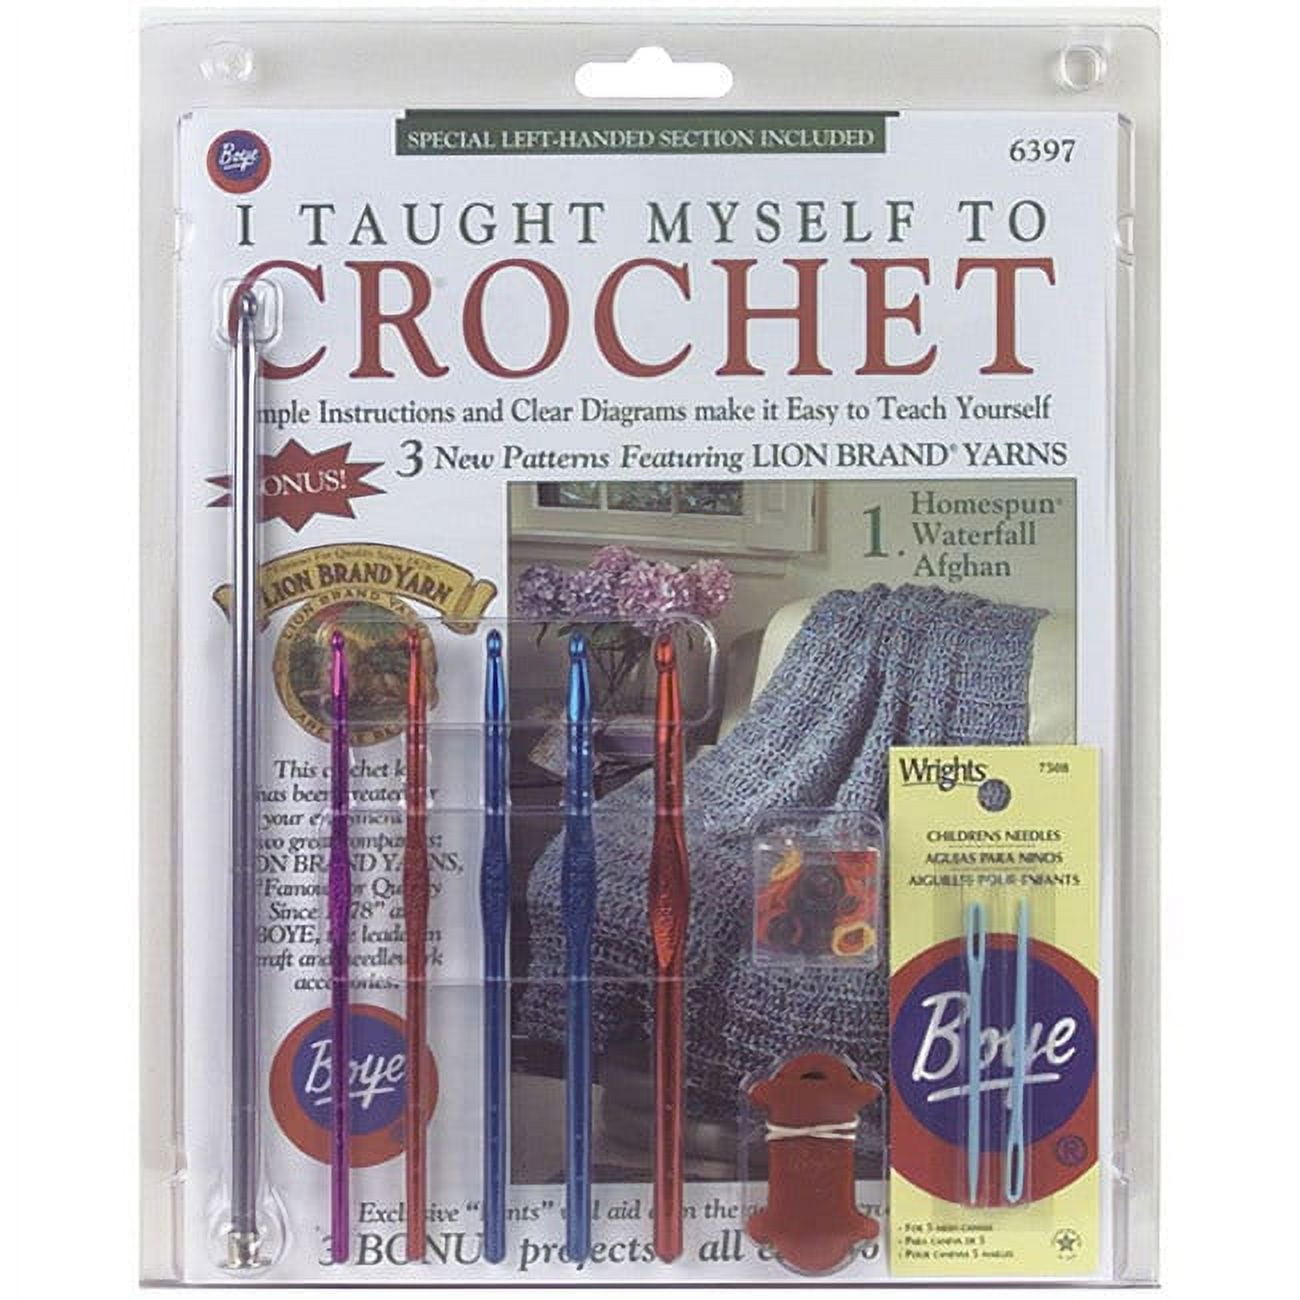 I Taught Myself Crochet Kit for Beginners - Crochet Kits at